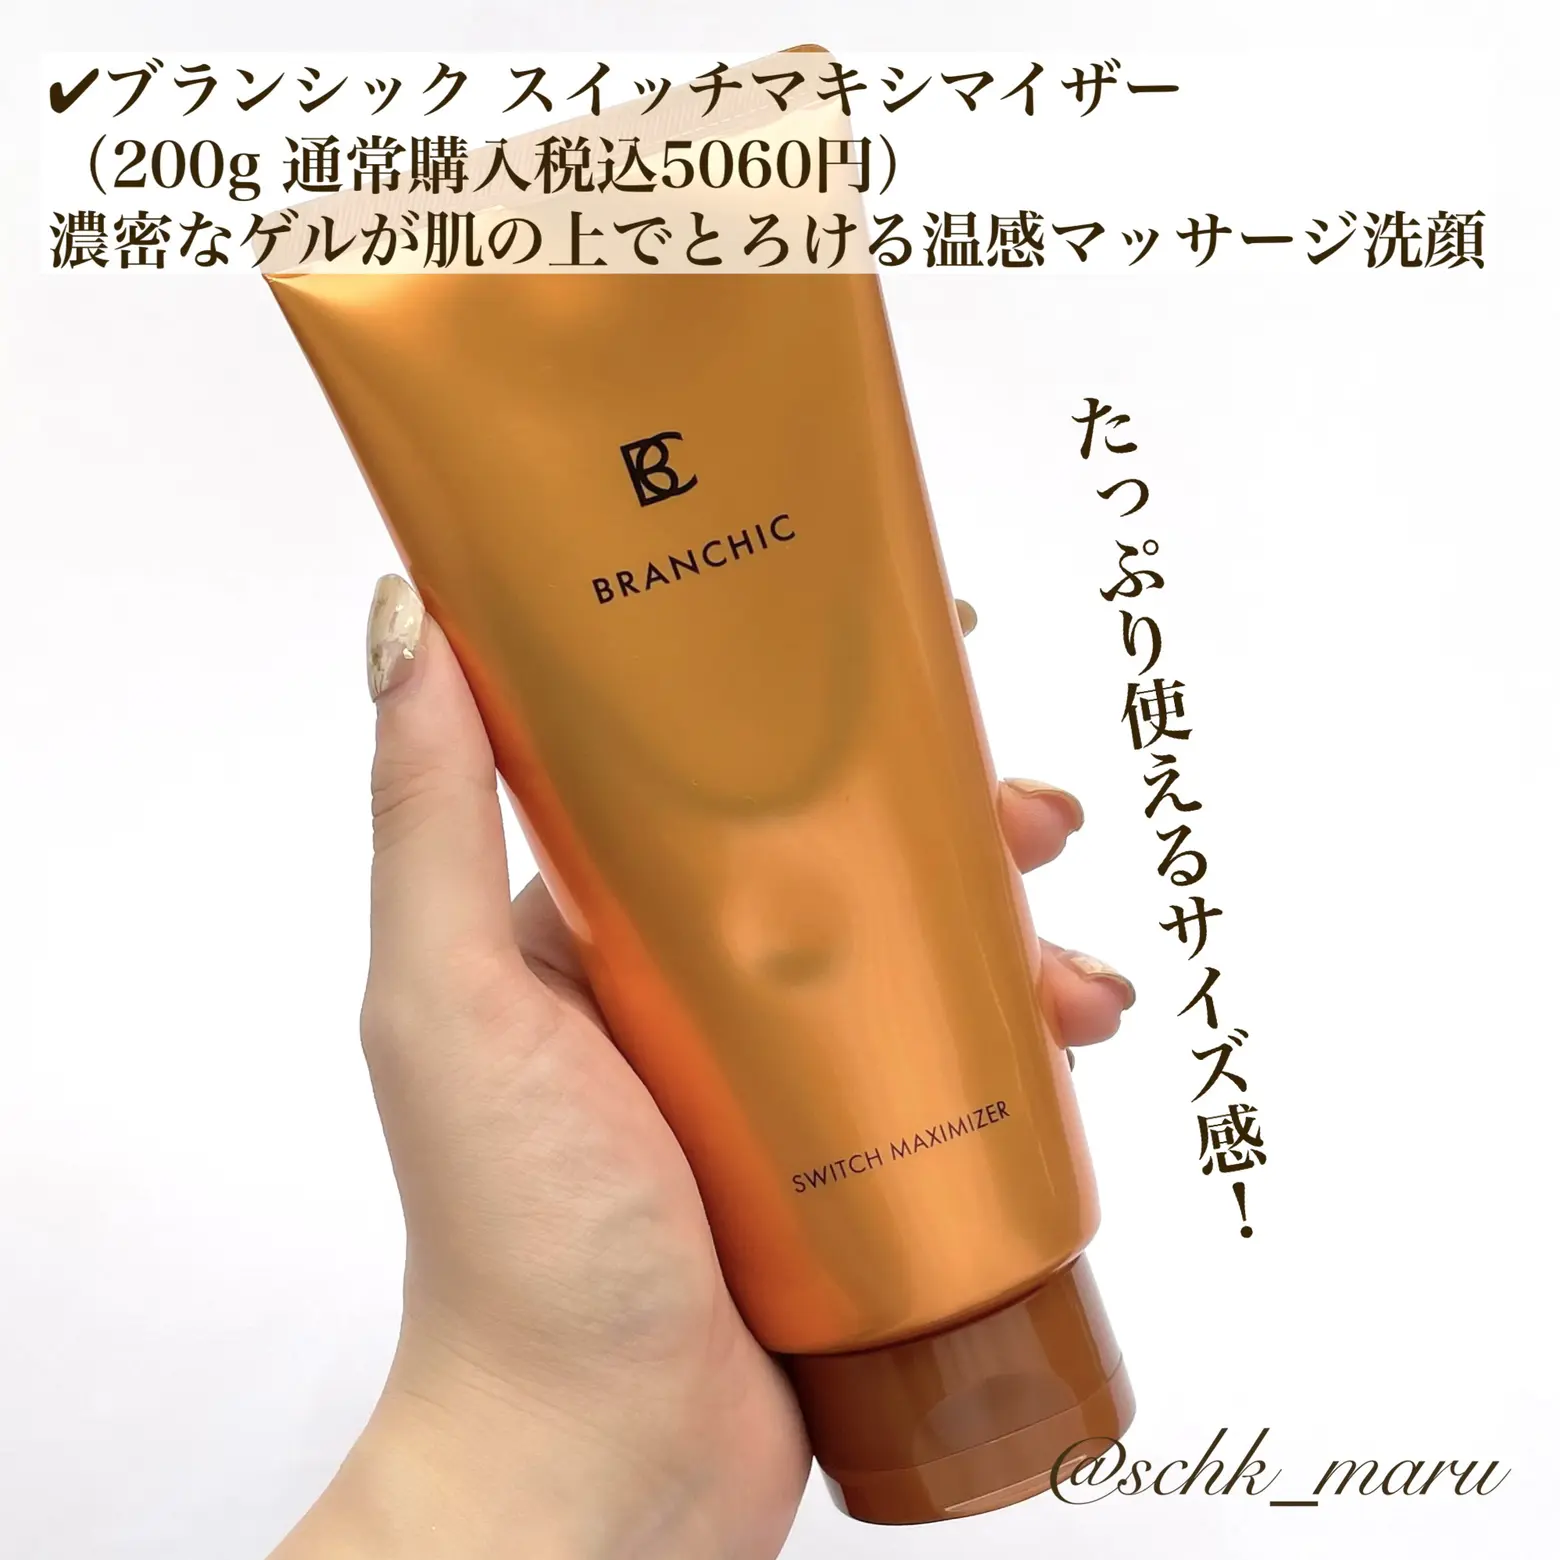 ブランシック スイッチマキシマイザーa 200g 美容洗顔料 人気ブランドの新作 美容洗顔料